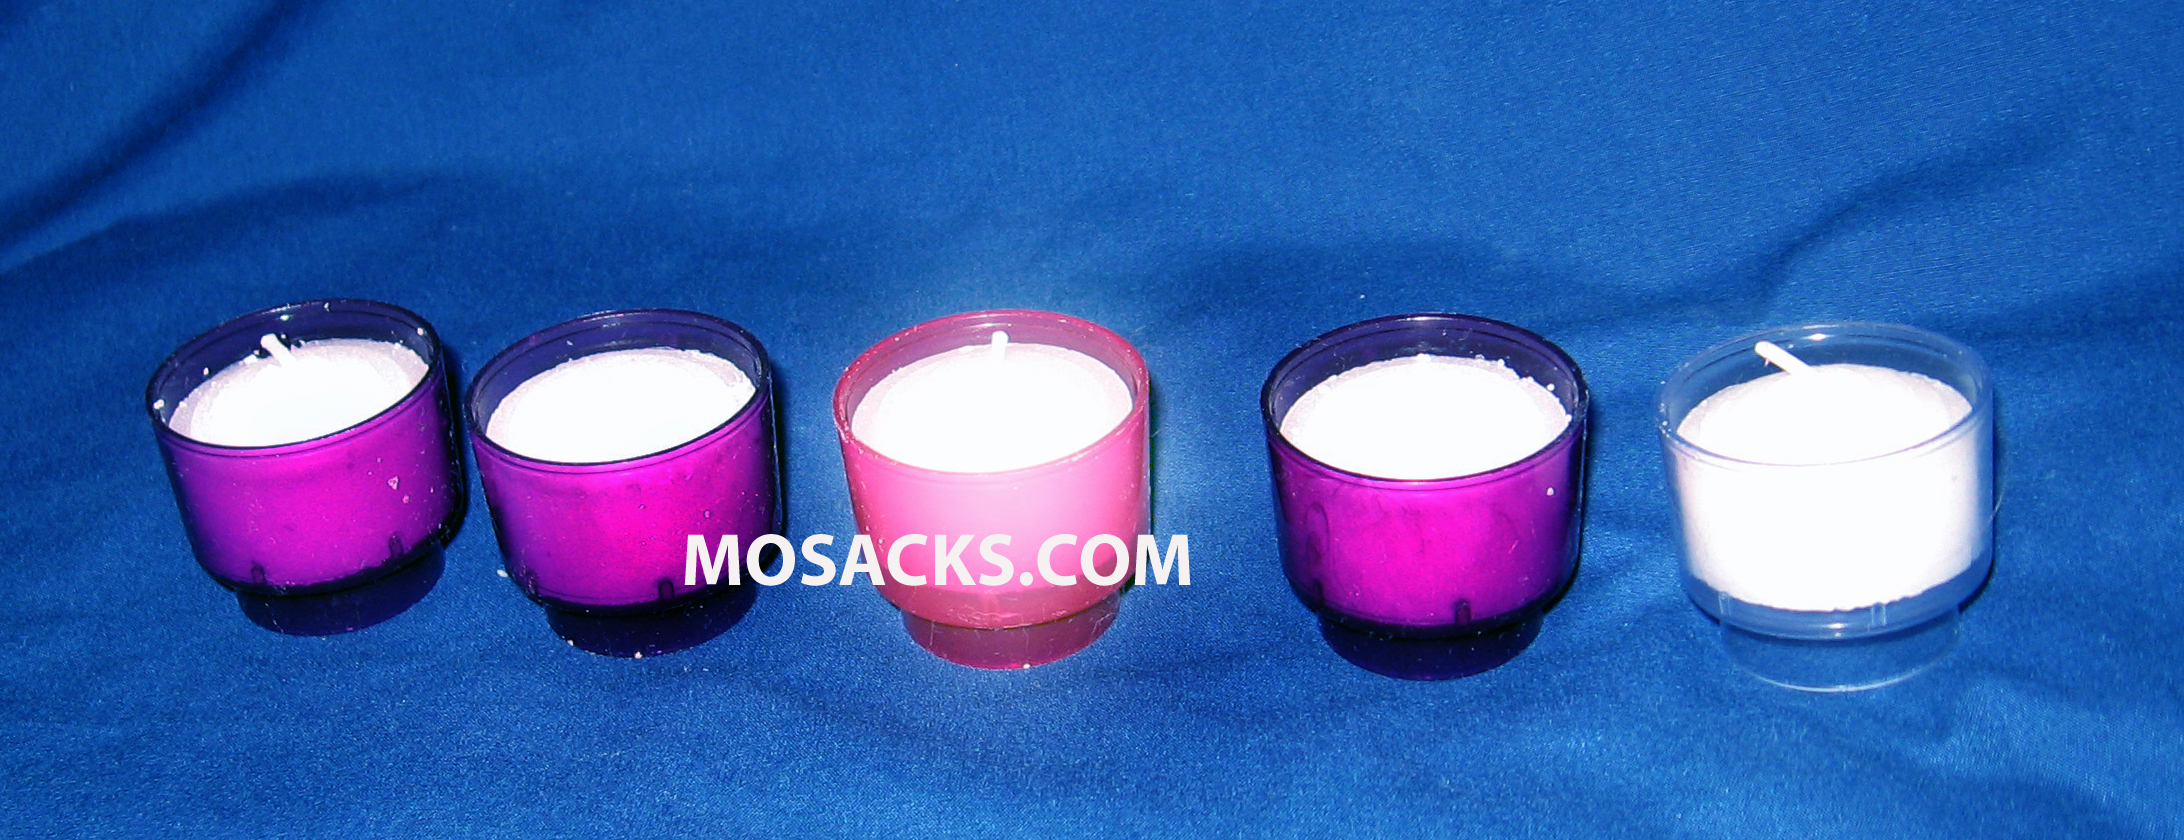 Advent Candle Votive 4 Hour Disposable Set 3 Purple, 1 Pink, 1 White 308-